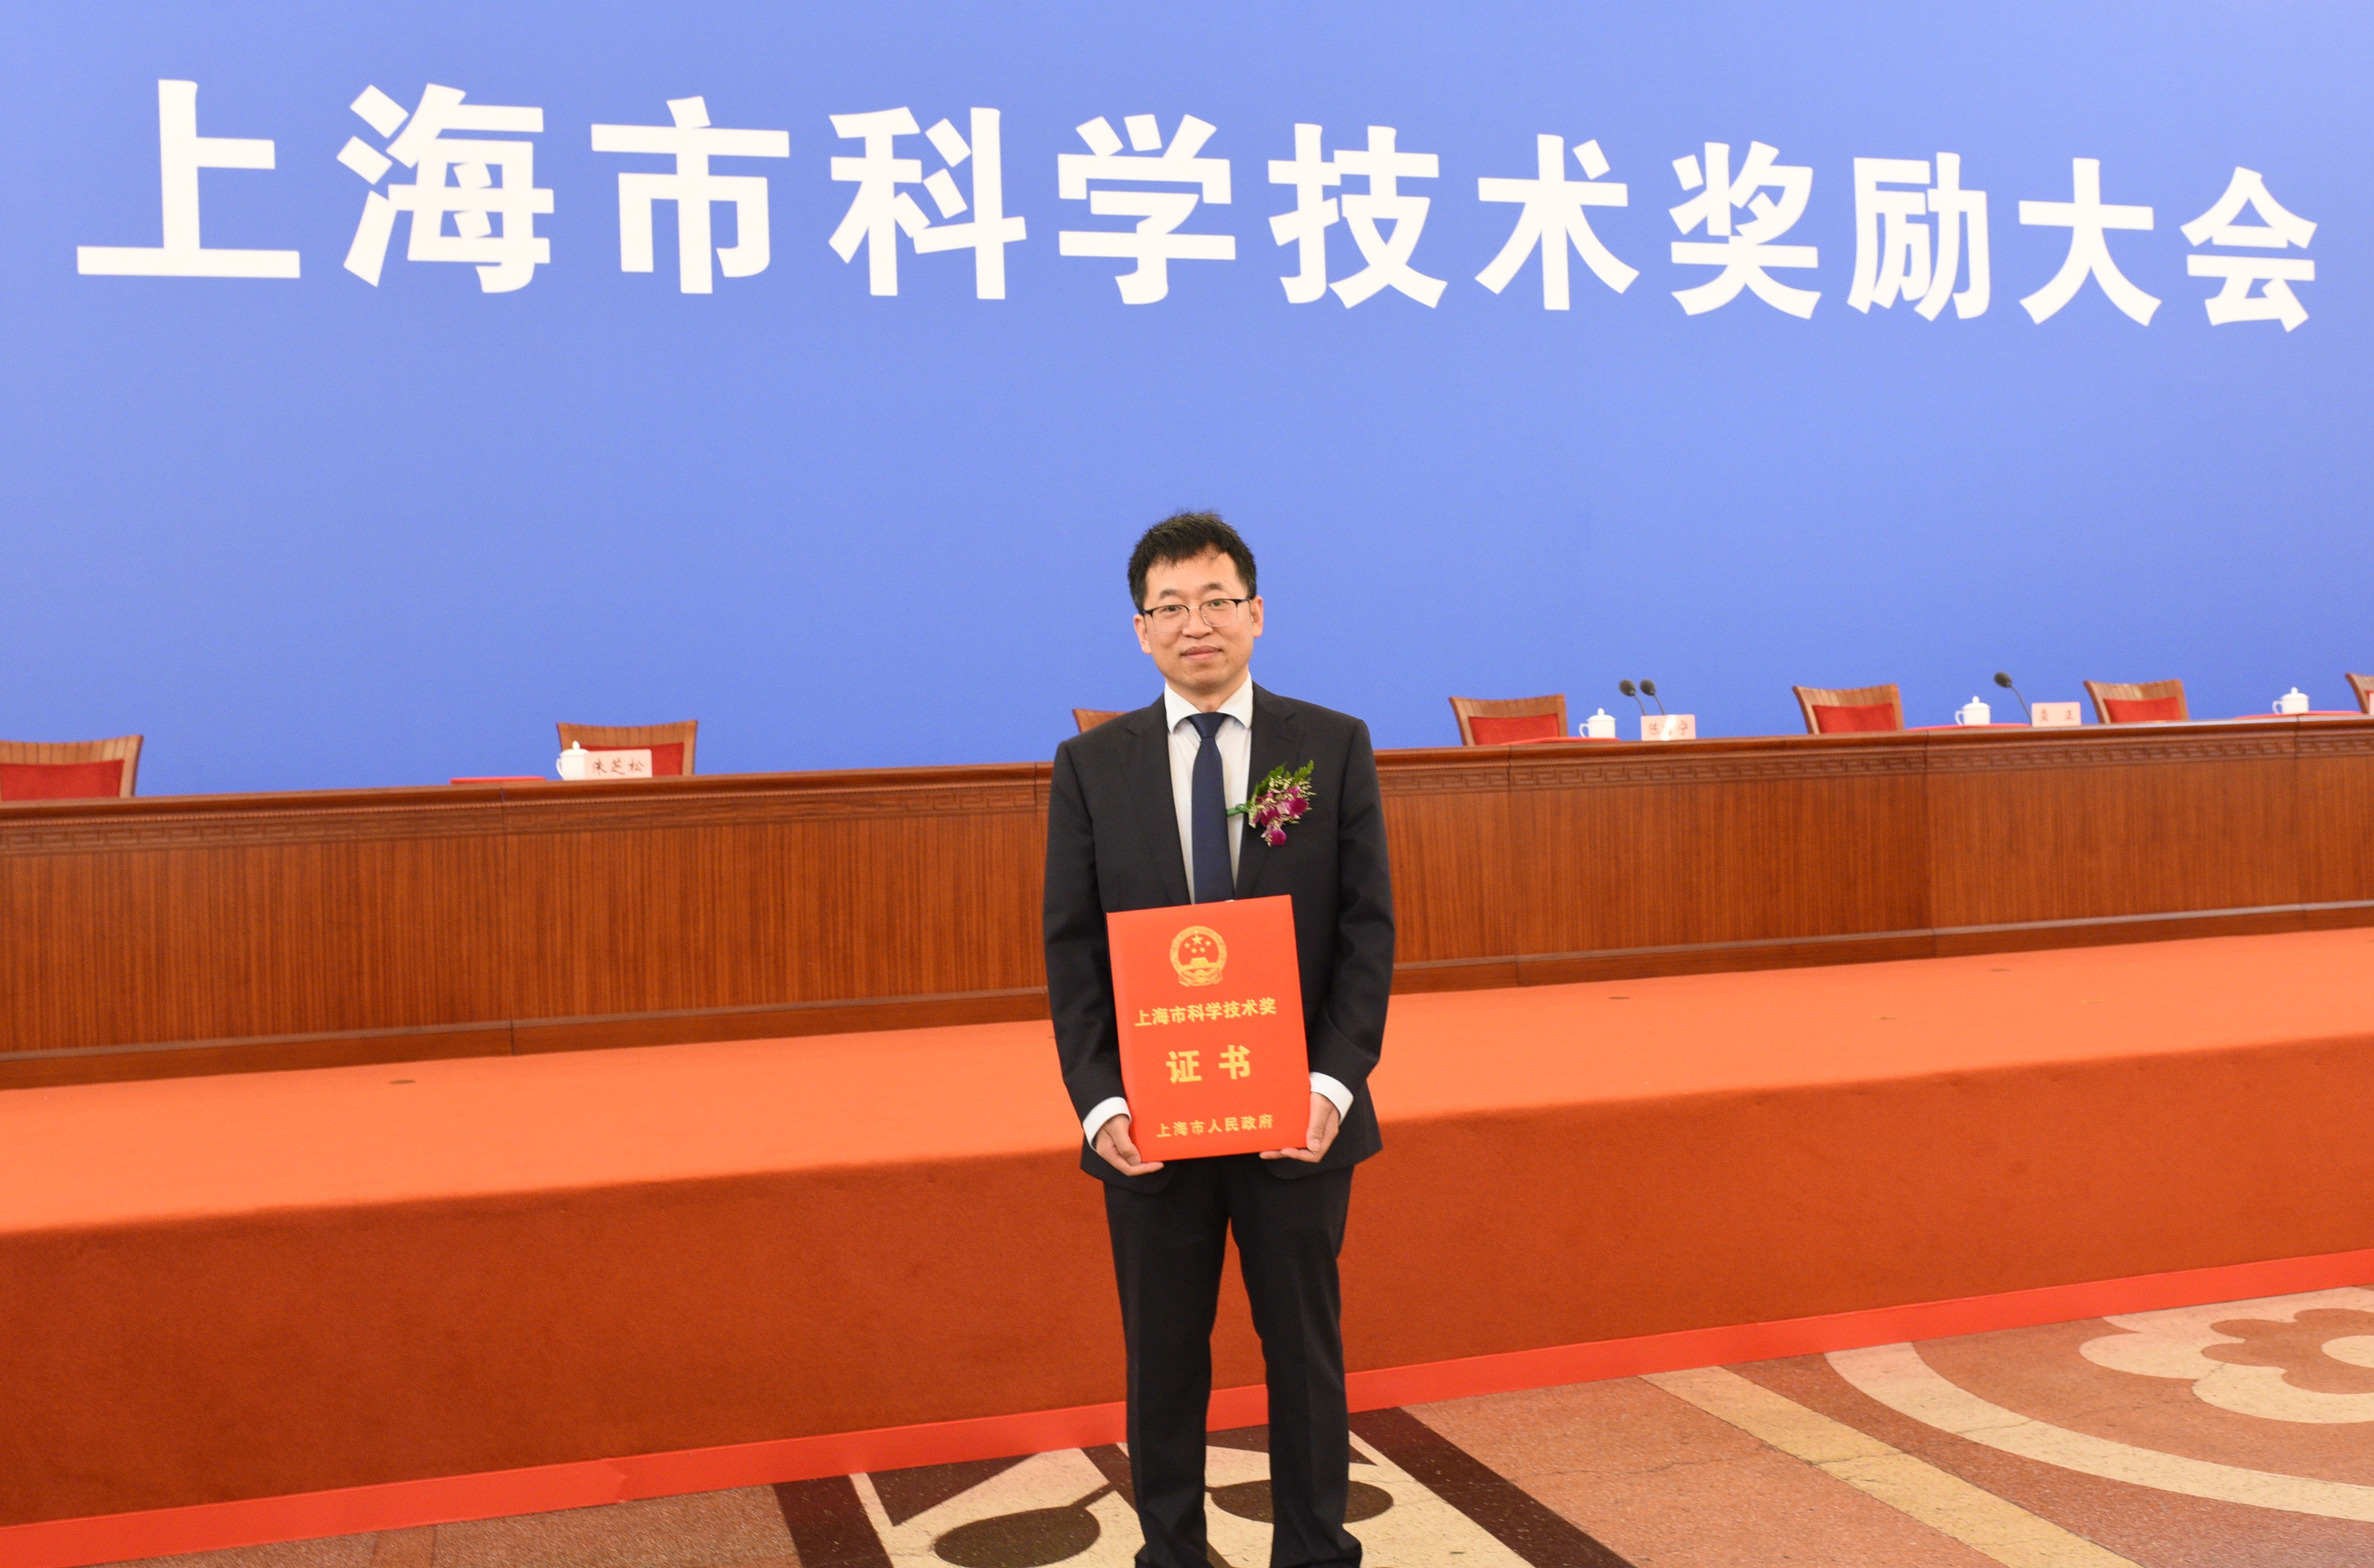 祝贺！实验室武海斌教授荣获2022年上海市青年科技杰出贡献奖